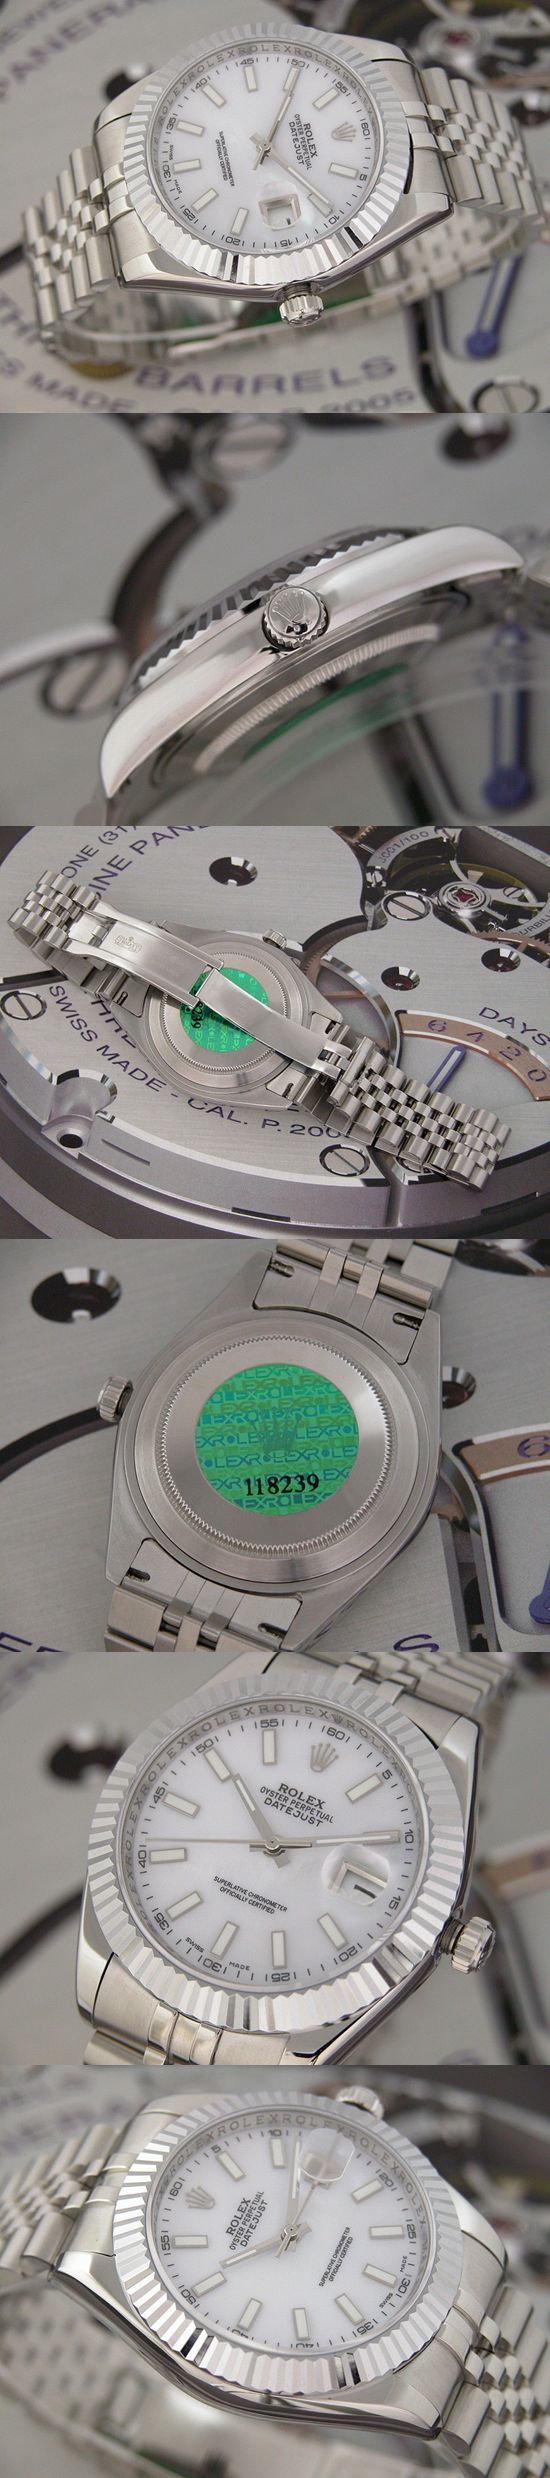 おしゃれなブランド時計がロレックス-デイトジャスト-ROLEX-118239-104-男性用を提供します.